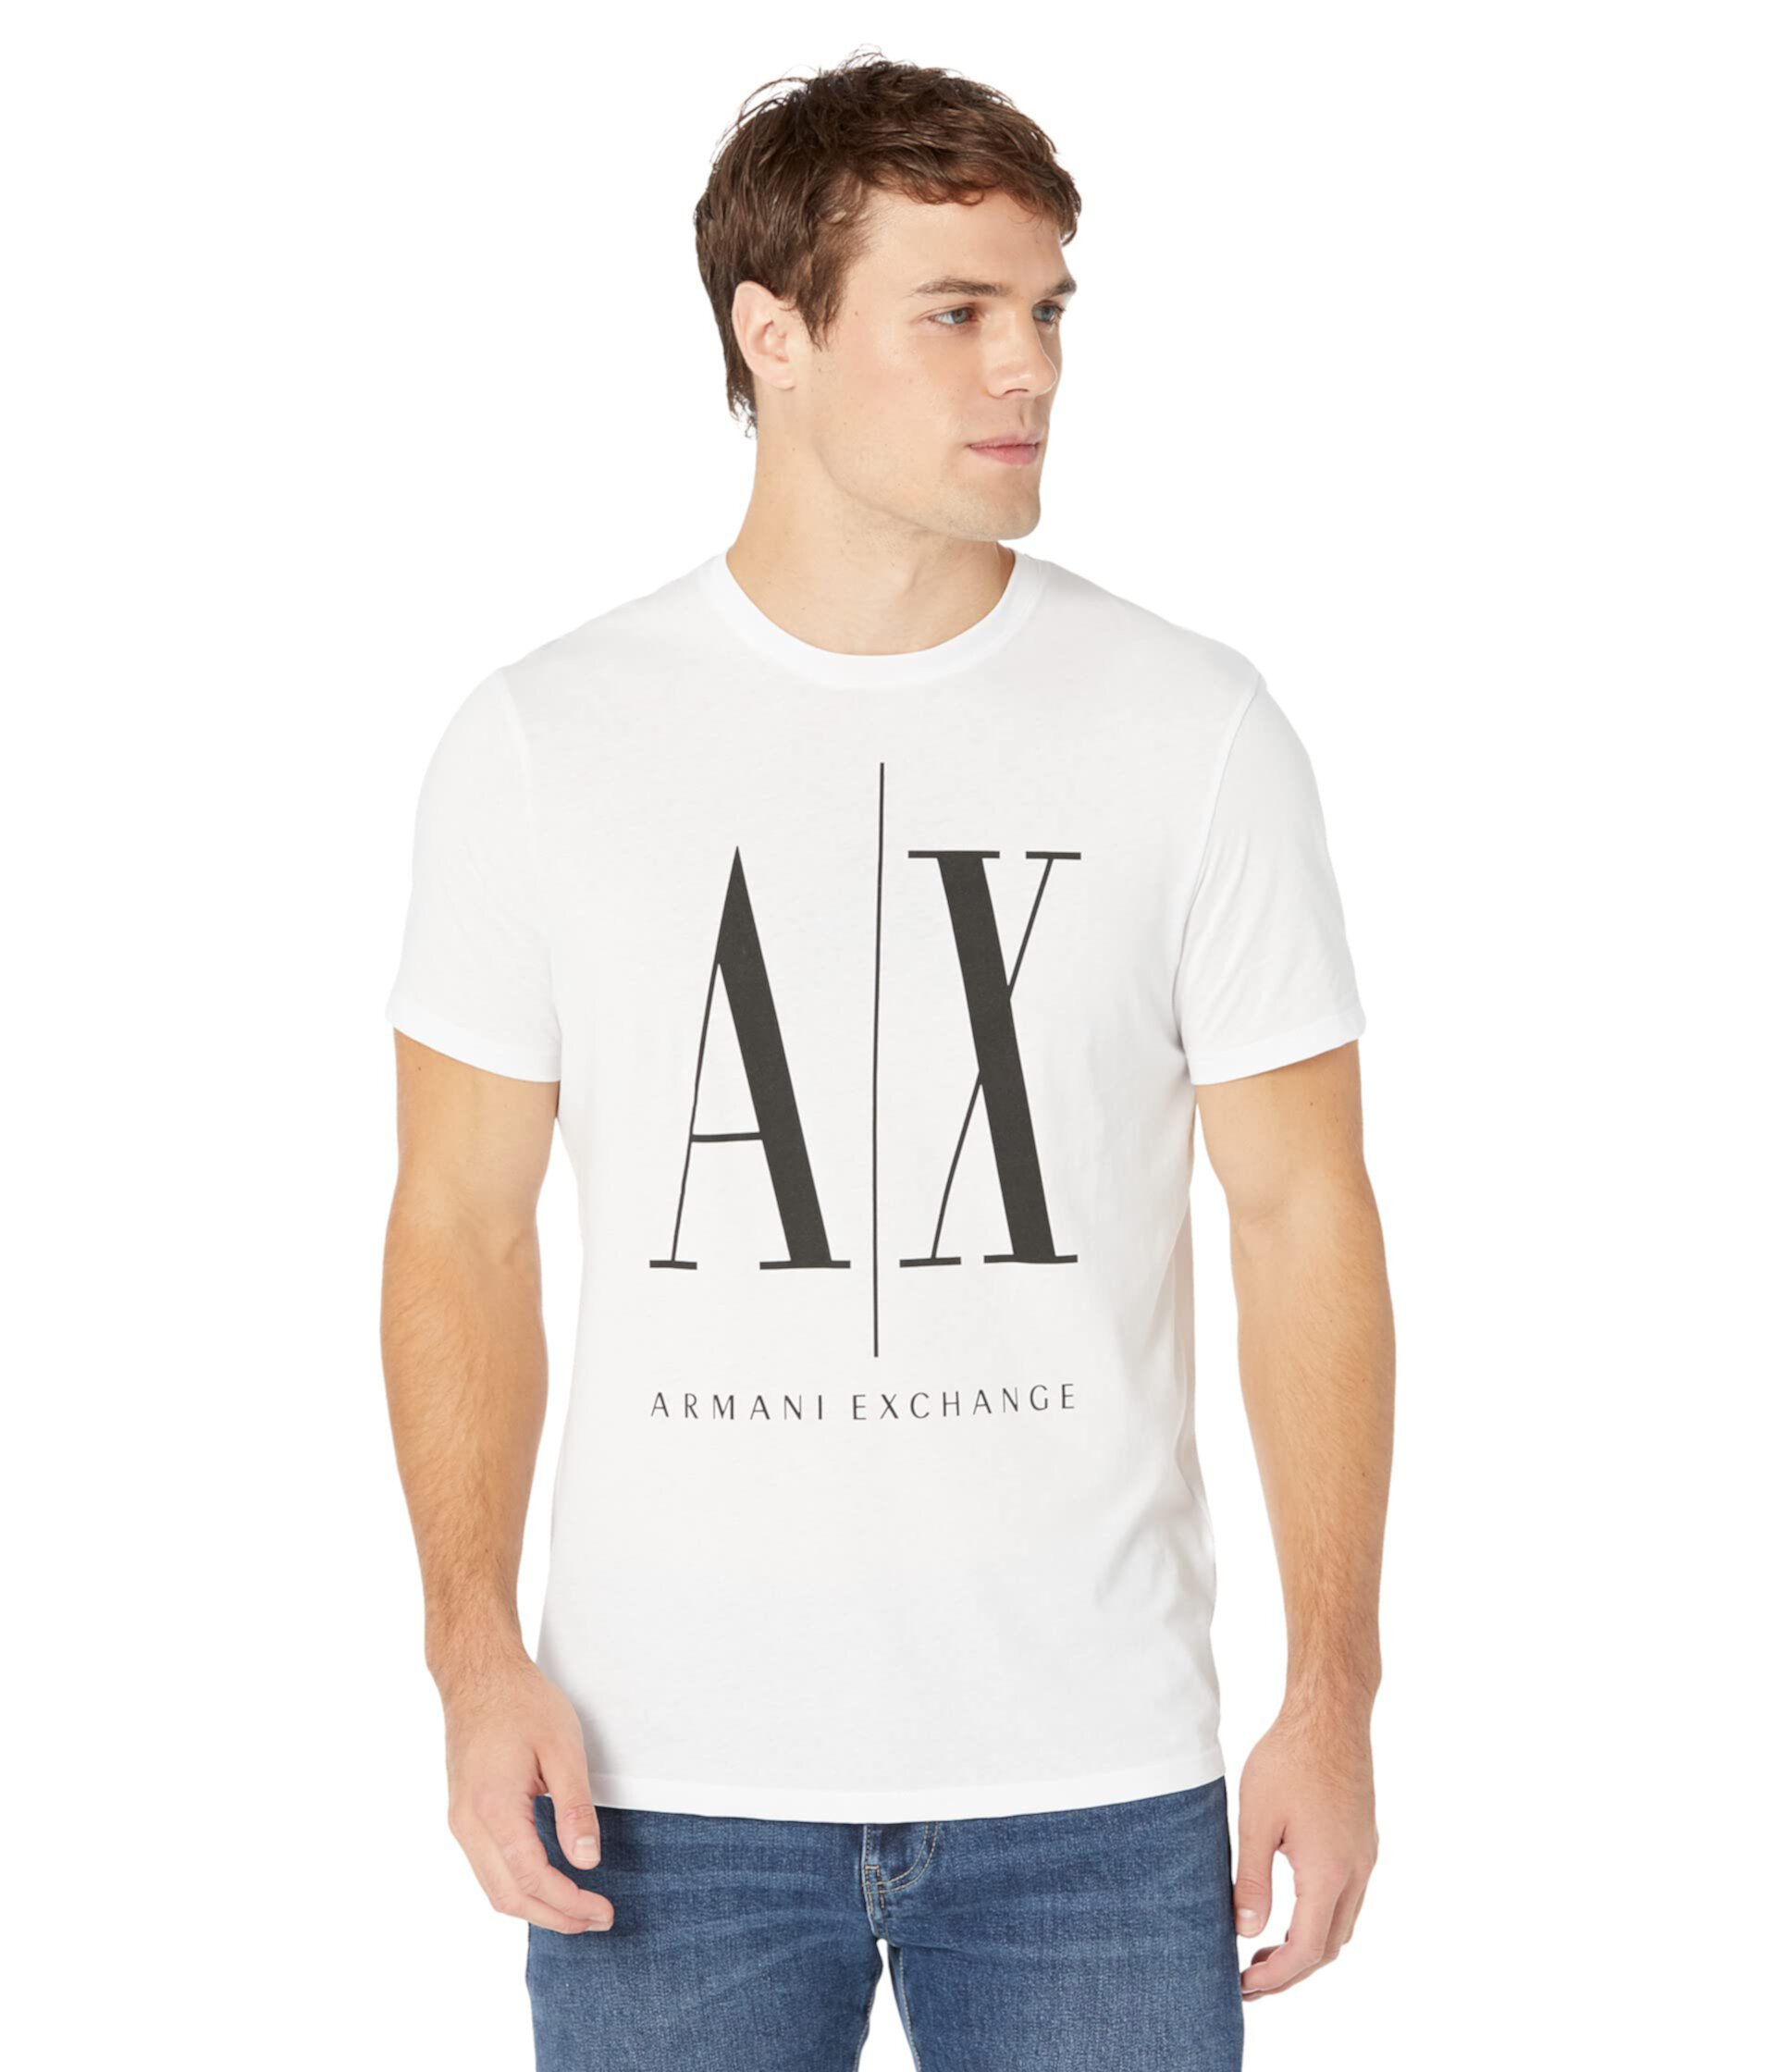 Мужская хлопковая футболка с принтом логотипа AX ARMANI EXCHANGE AX ARMANI EXCHANGE